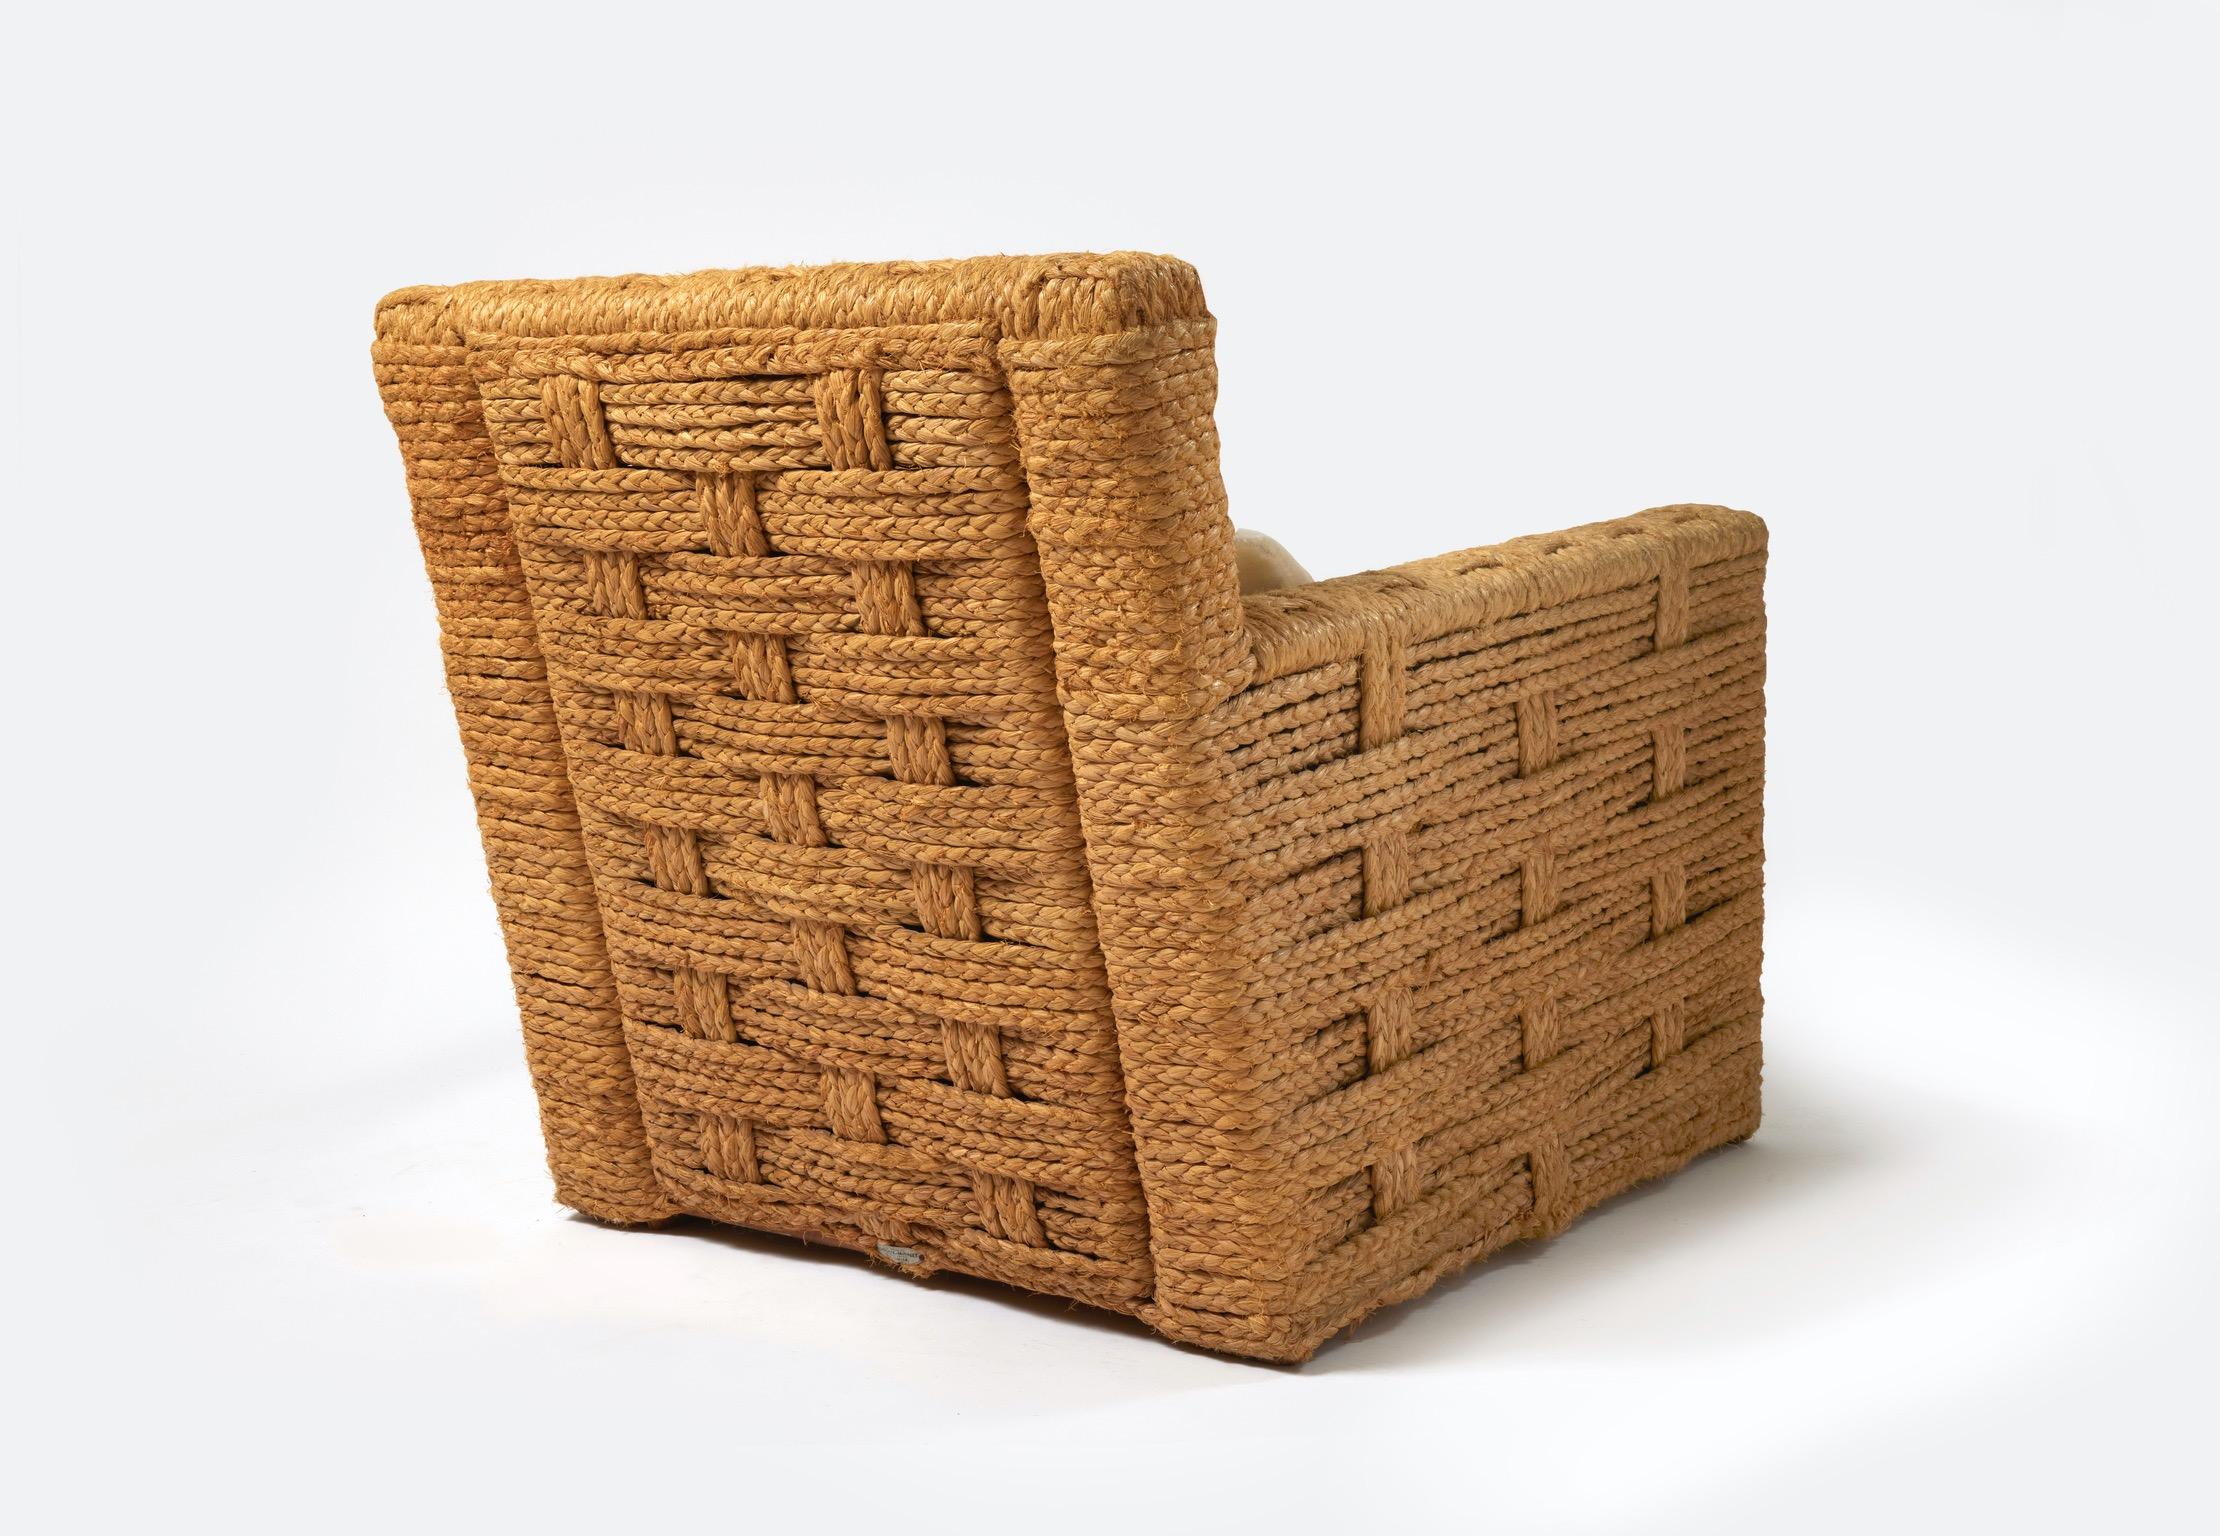 Paire de fauteuils en corde tressée, structure en bois avec coussins recouverts de mohair blanc cassé. 

Plaque 